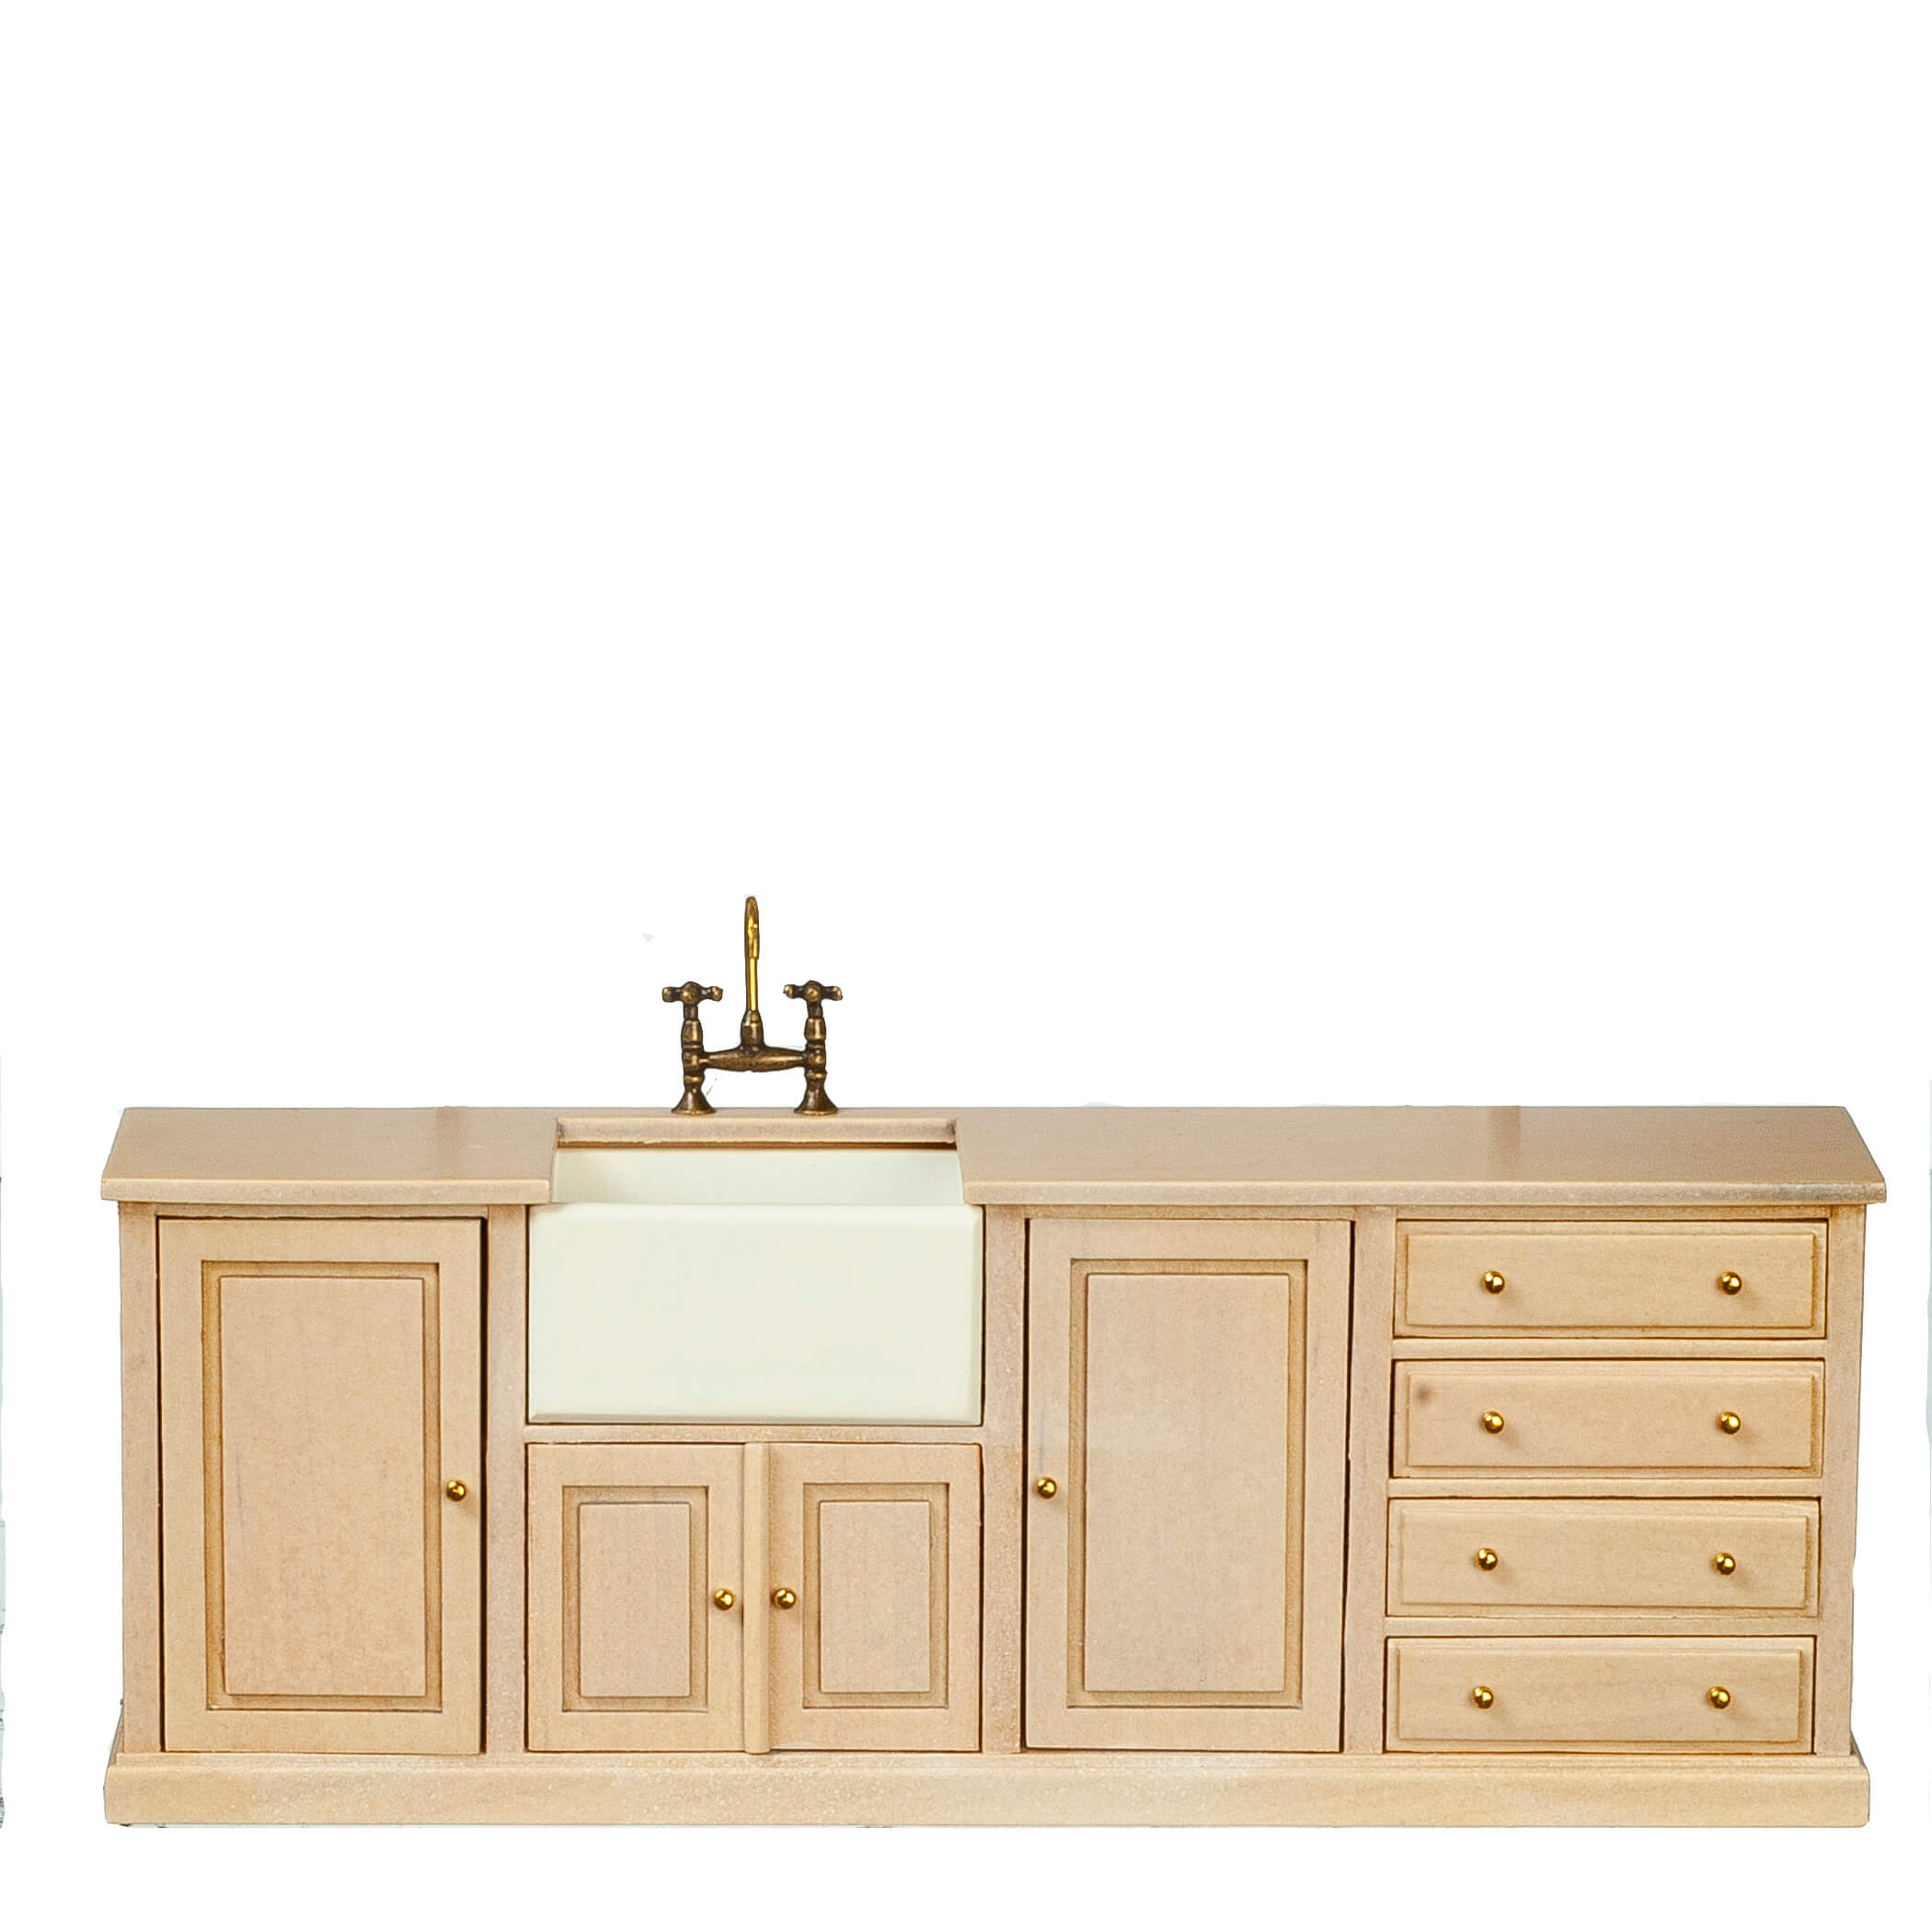 Kitchen Sink w/ Cabinet - White Wash & Wood